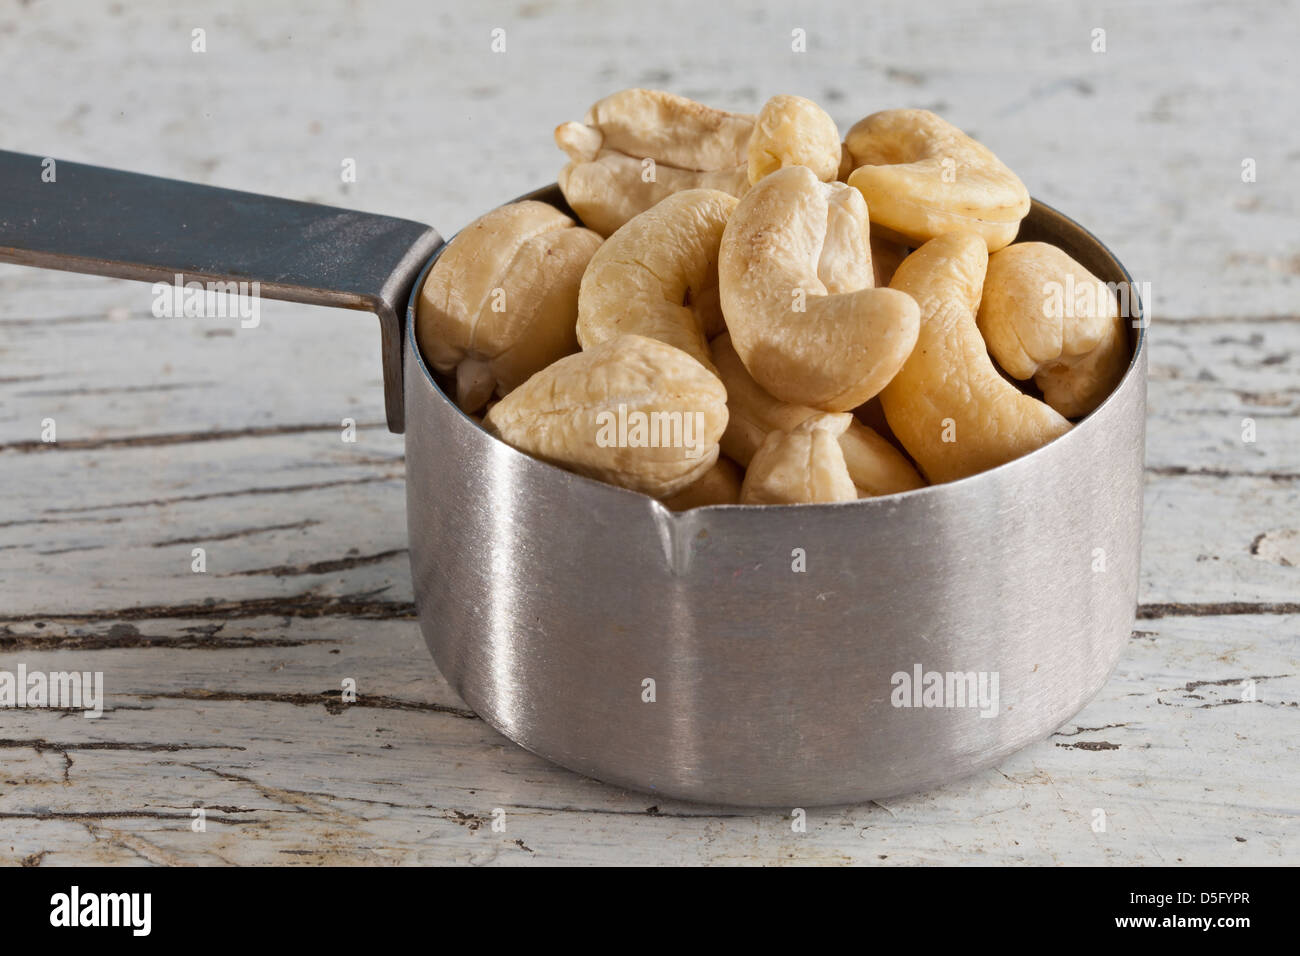 Les noix de cajou brutes dans une cuisine Banque D'Images